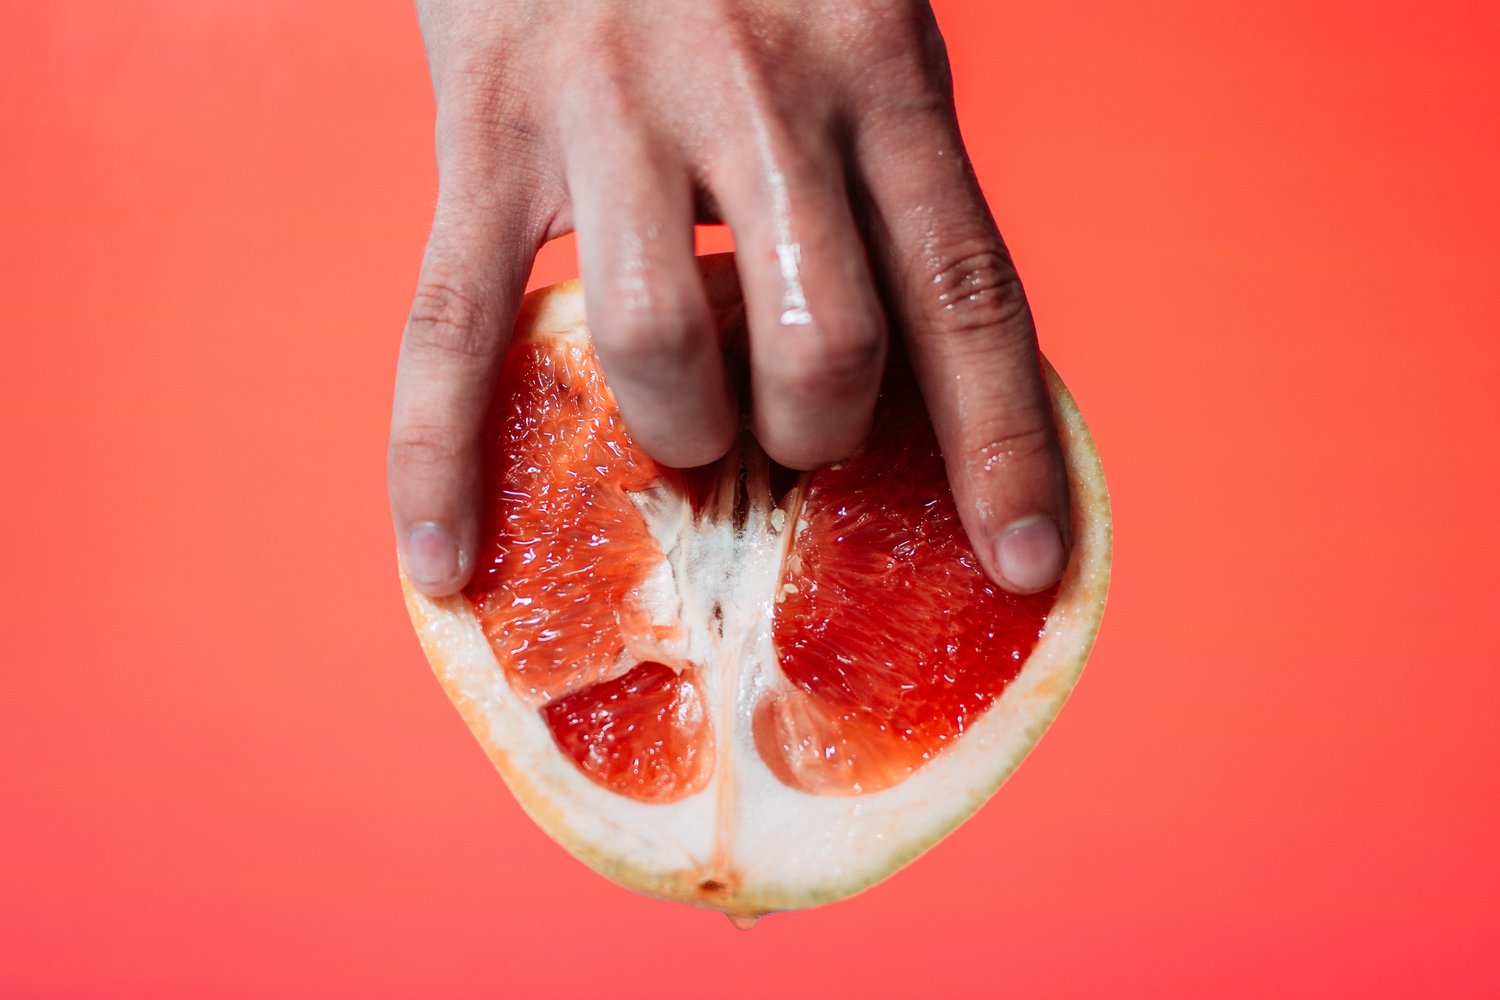 Hands on a grapefruit